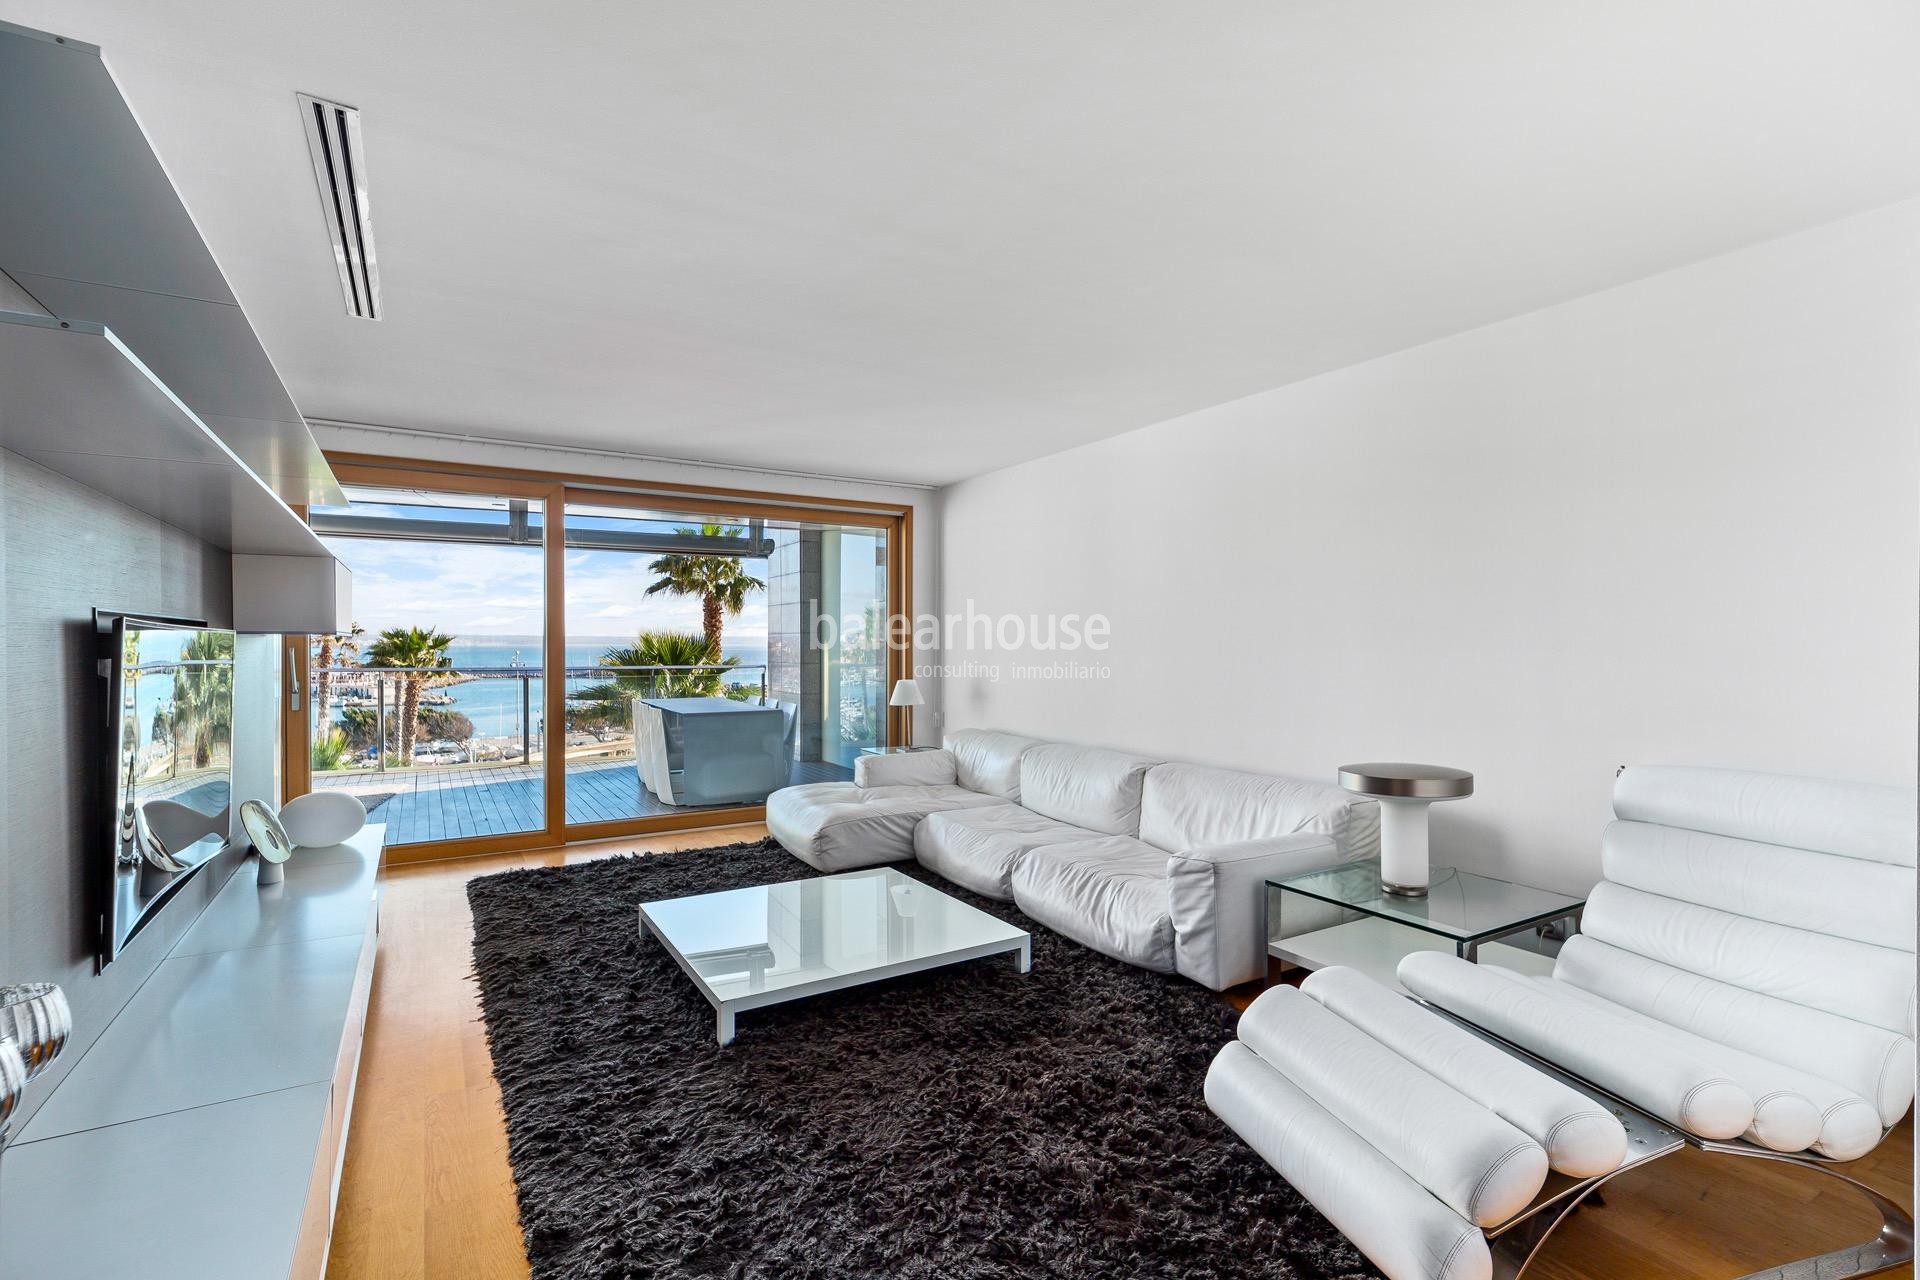 Exclusivo piso con gran terraza privilegiadamente ubicado en primera línea de mar del Portixol